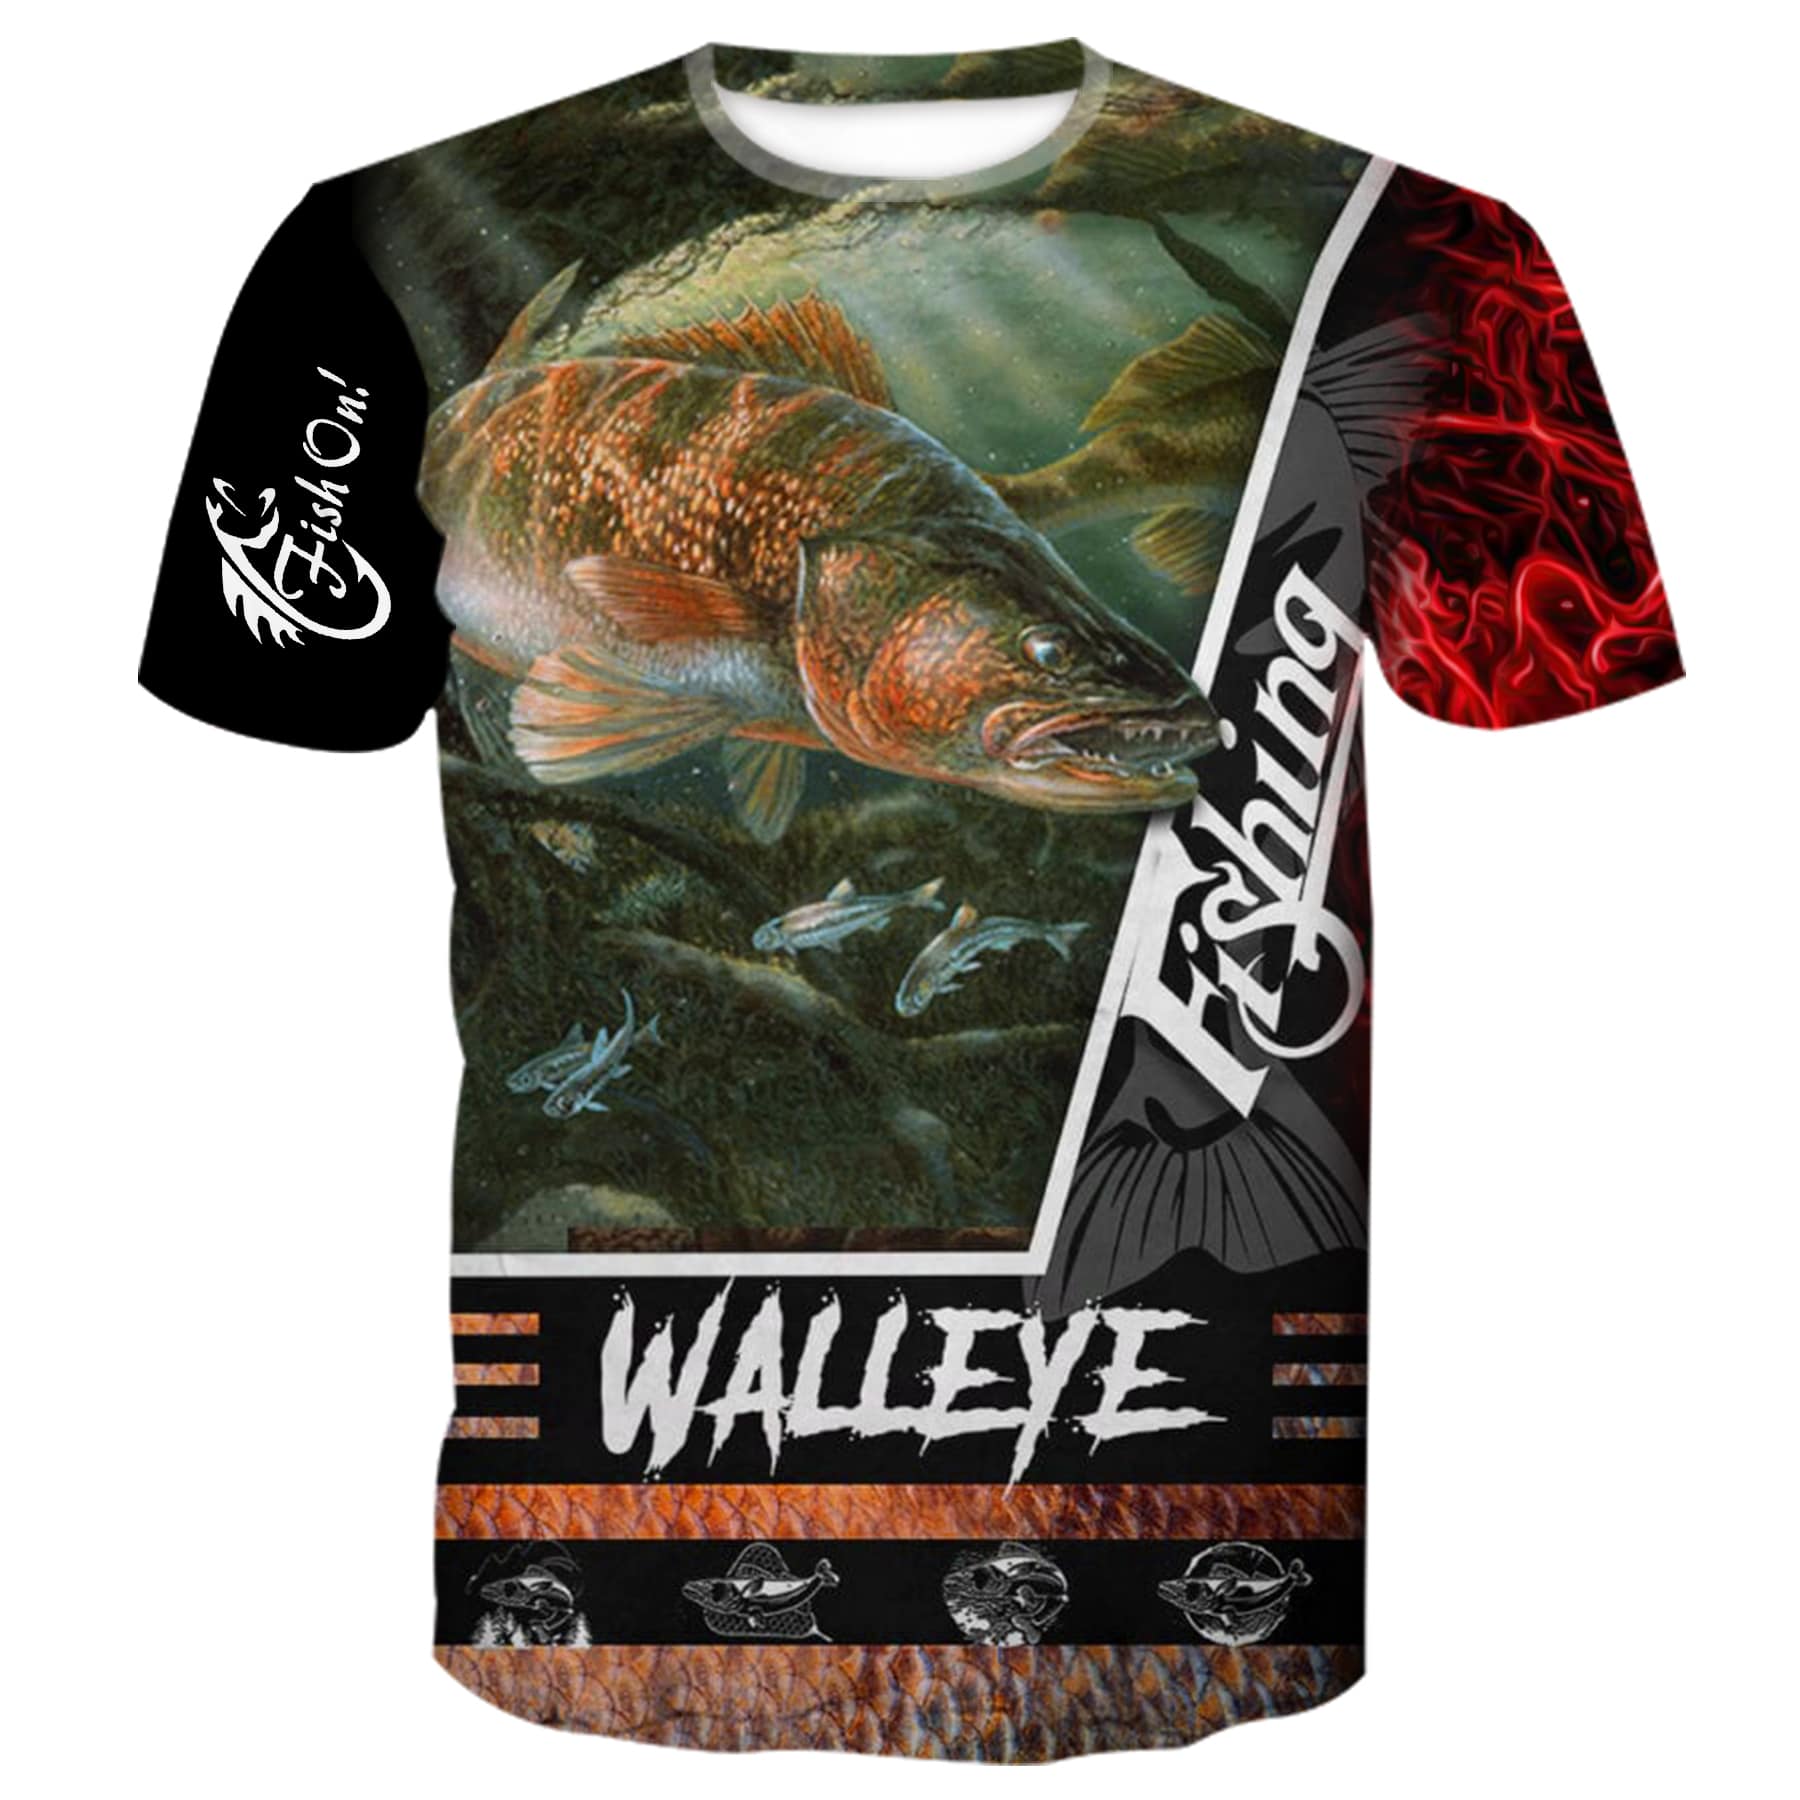 Walleye Fishing - T-Shirt